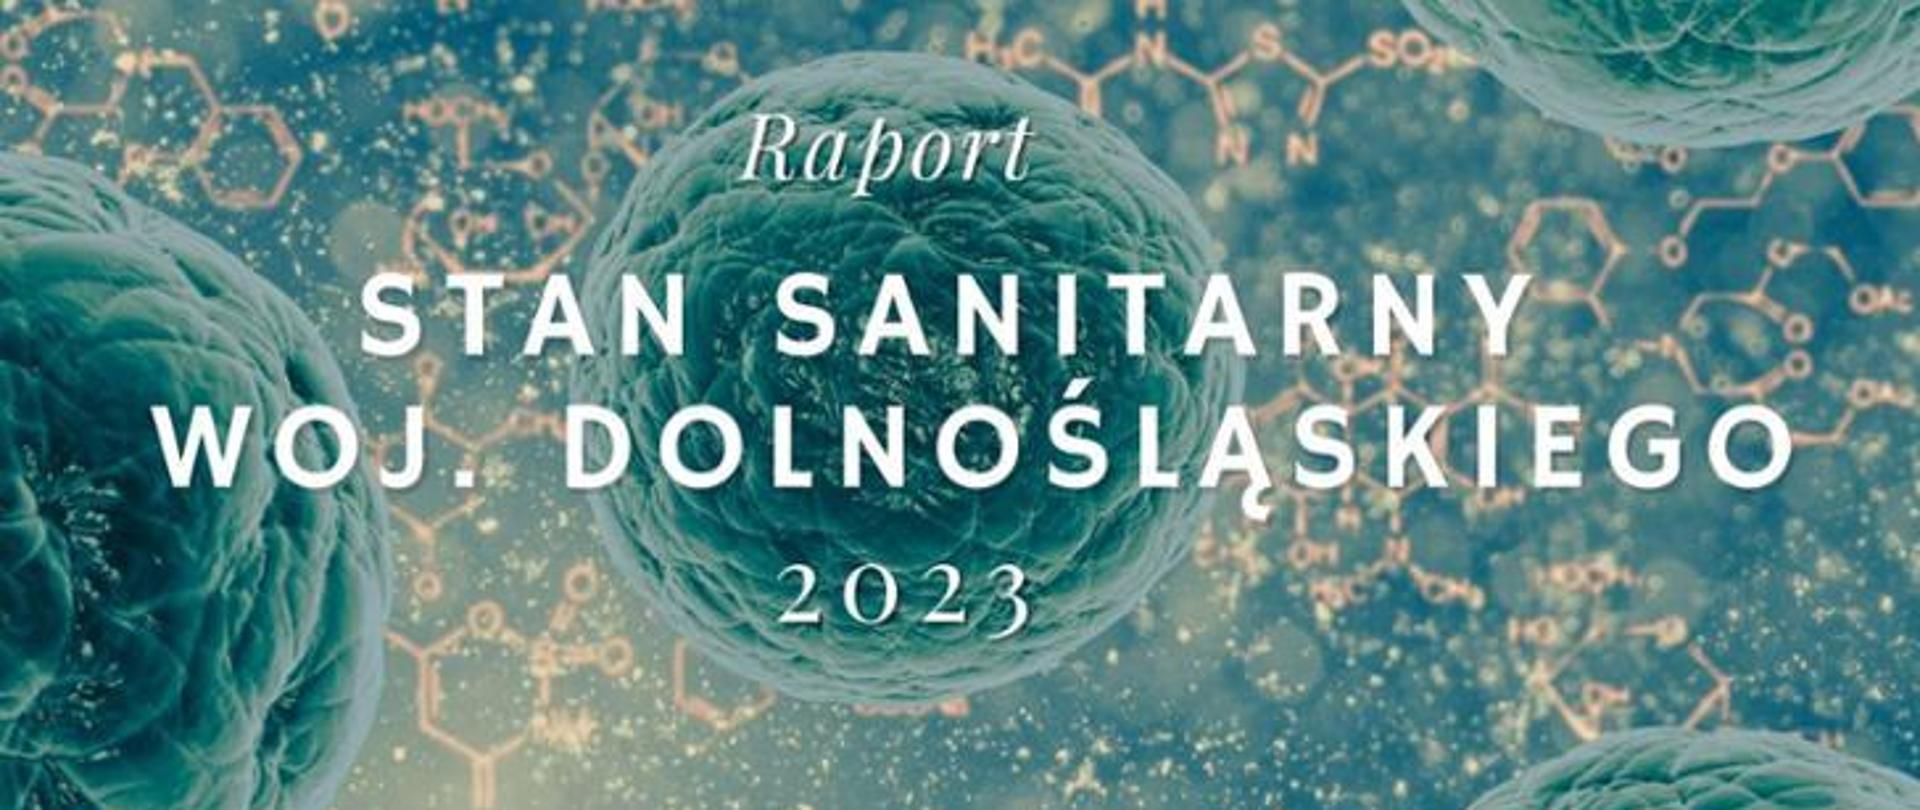 Raport Stan Sanitarny woj. Dolnośląskiego 2023